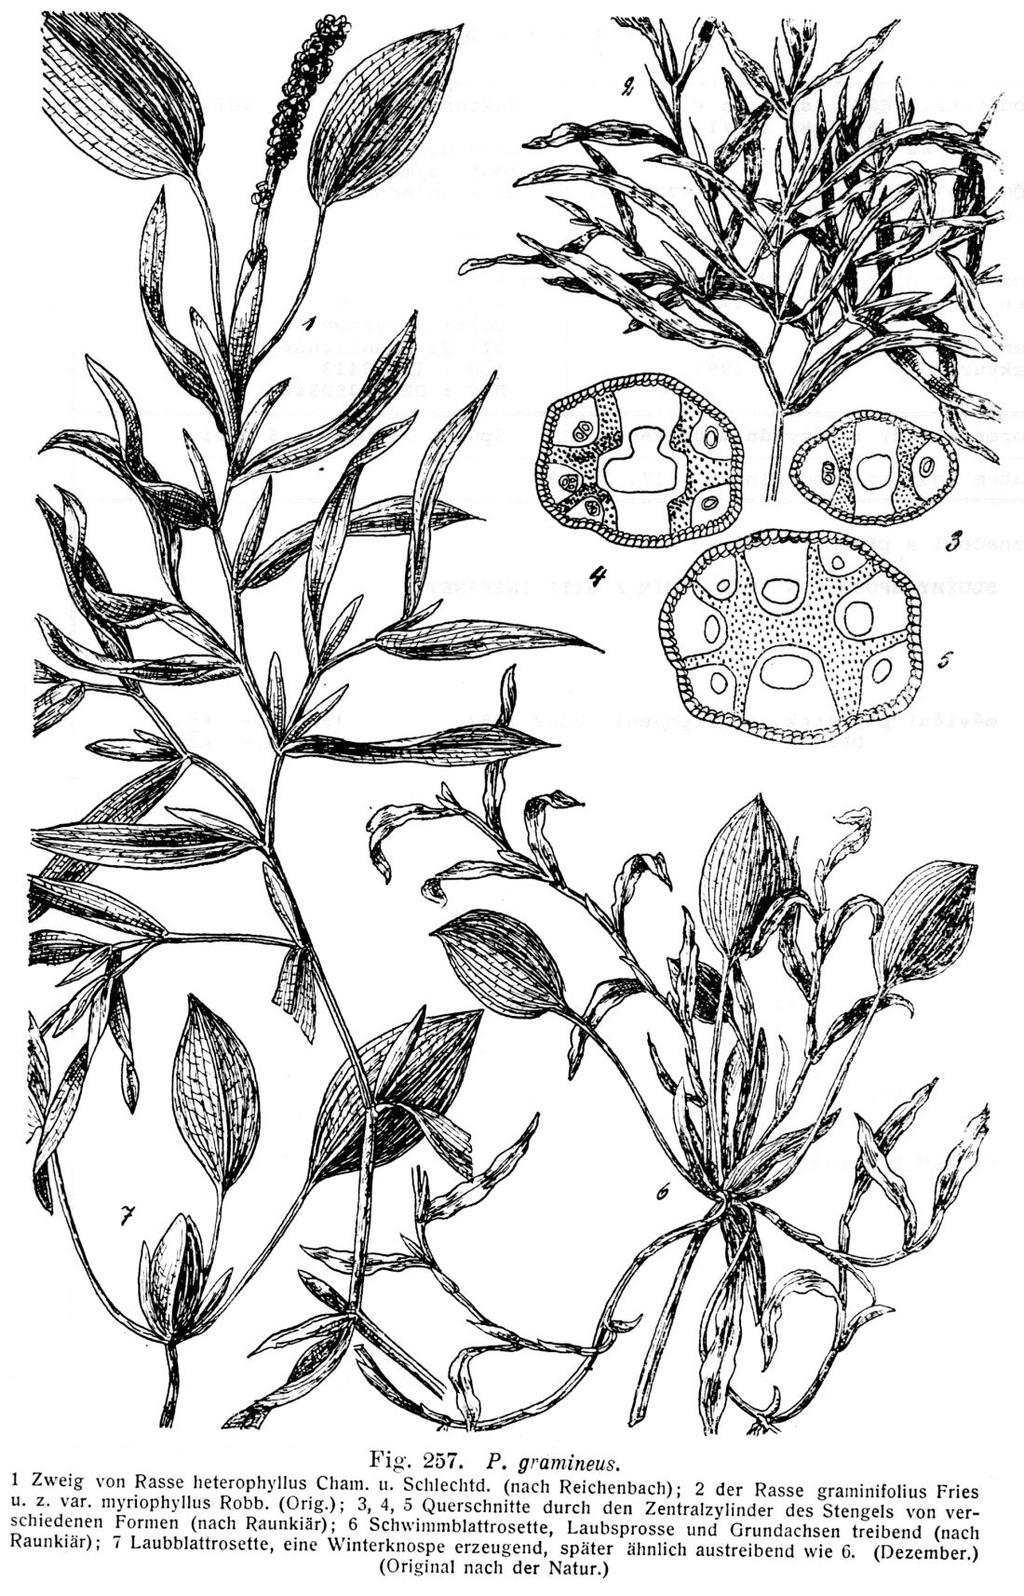 Potamogeton gramineus -przylistki 0,6-3,5 cm dł.